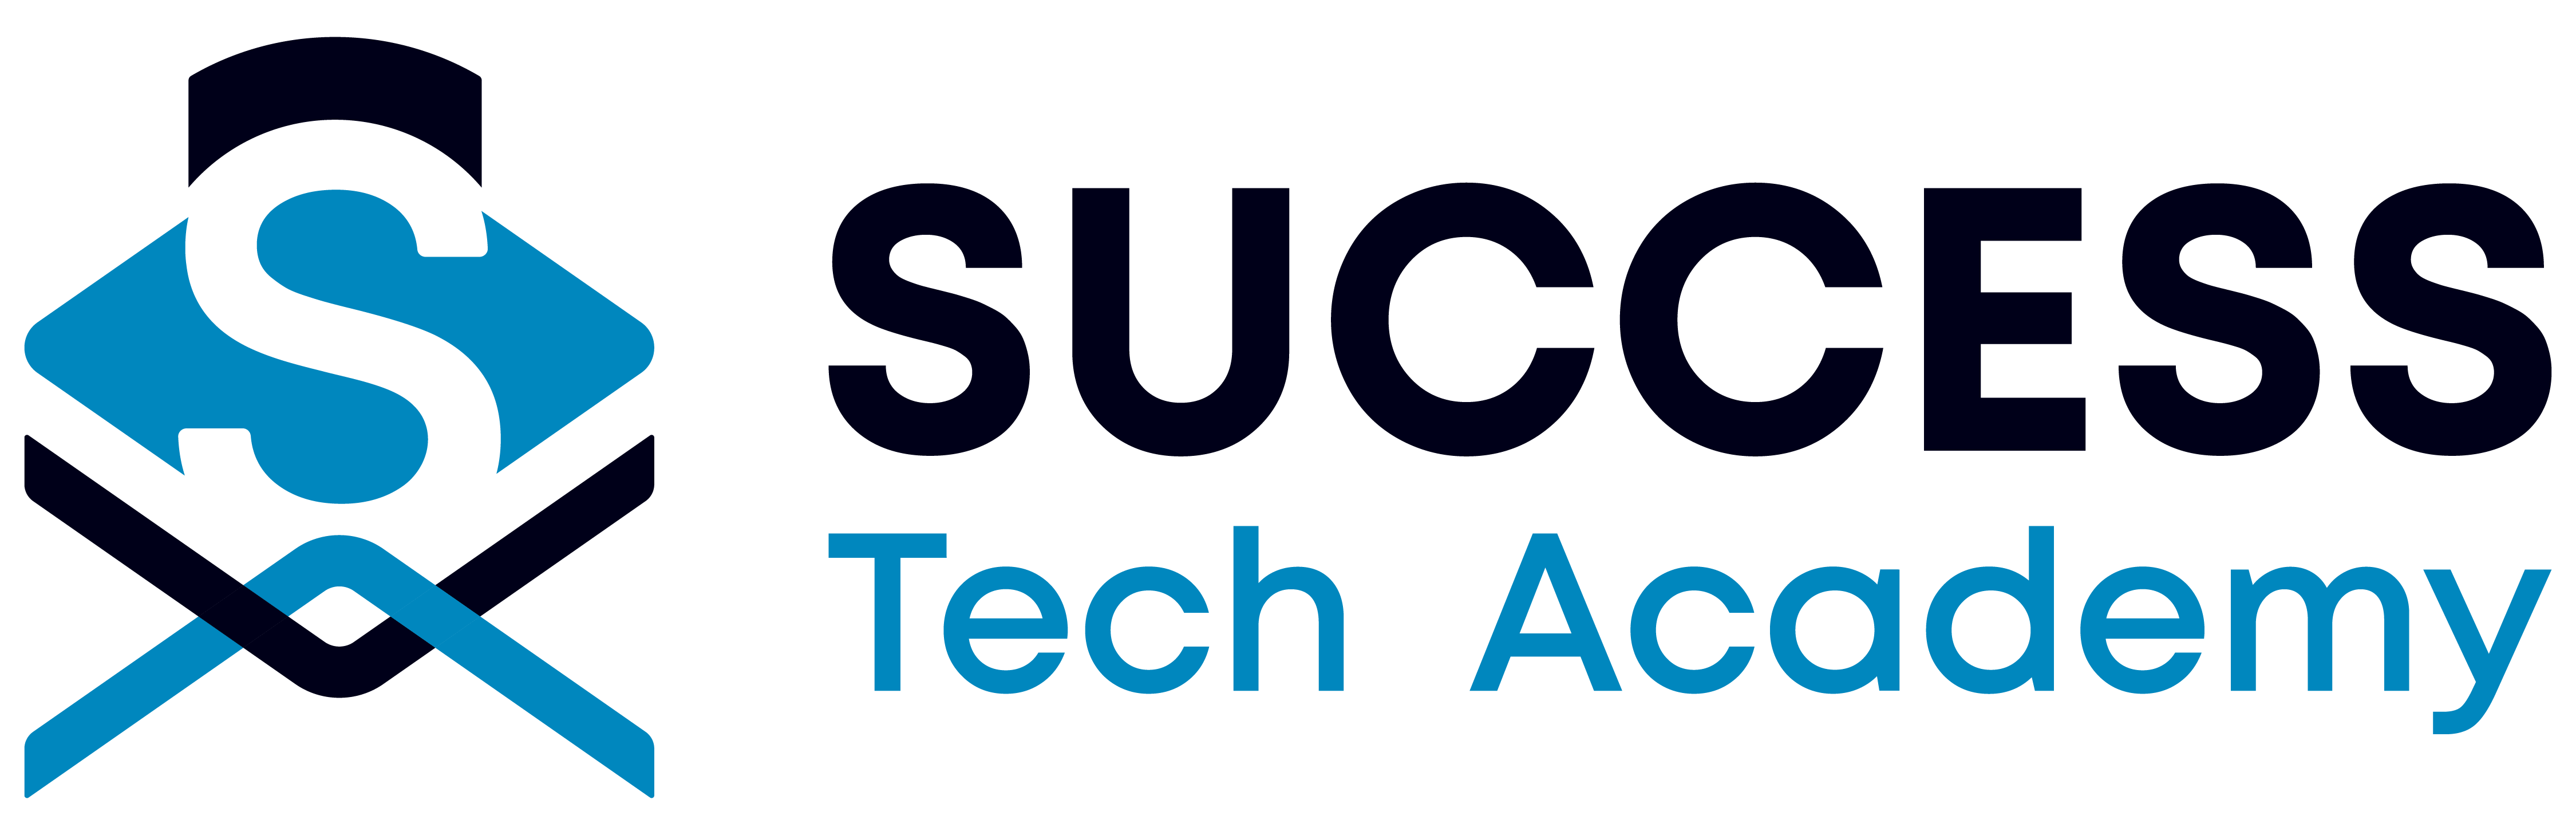 Success Tech Academy